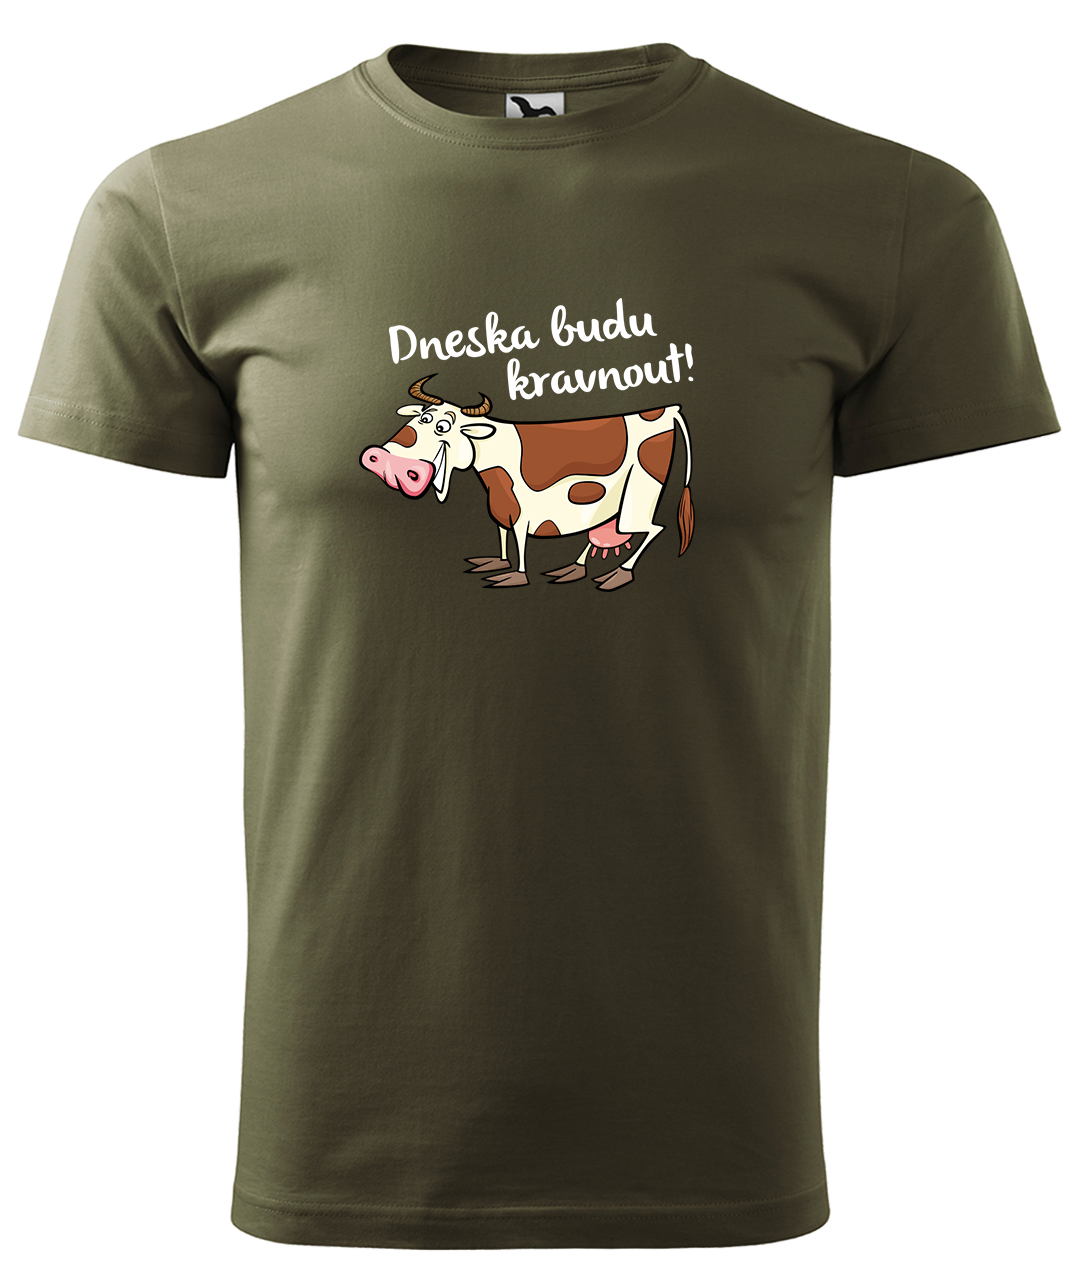 Dětské tričko s krávou - Dneska budu kravnout! Velikost: 4 roky / 110 cm, Barva: Military (69), Délka rukávu: Krátký rukáv